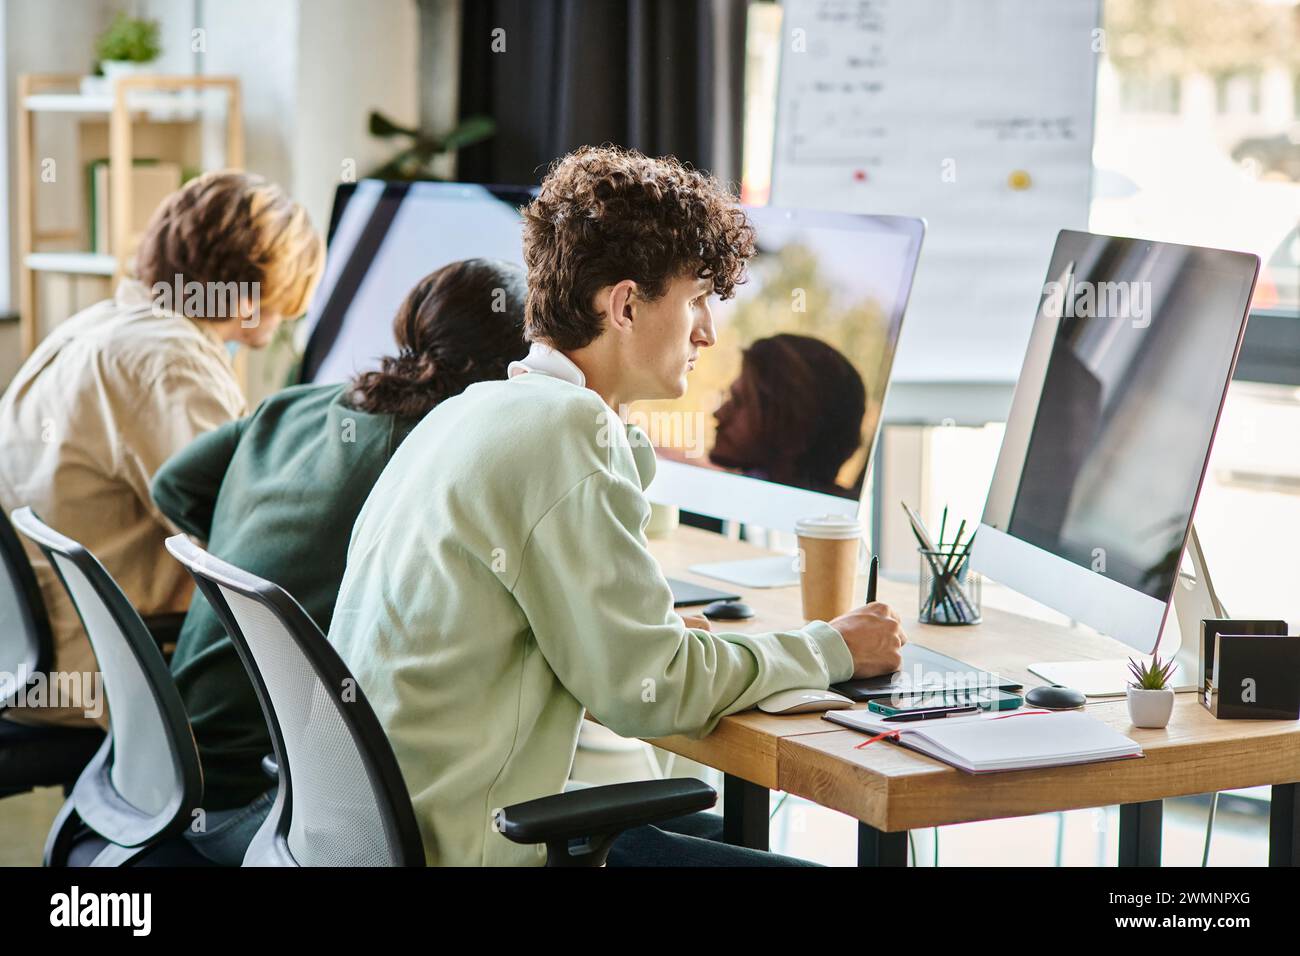 Junger Mann mit lockigen Haaren, der Fotos auf dem Tablet bearbeitet und den Monitor im Startup-Büro betrachtet Stockfoto